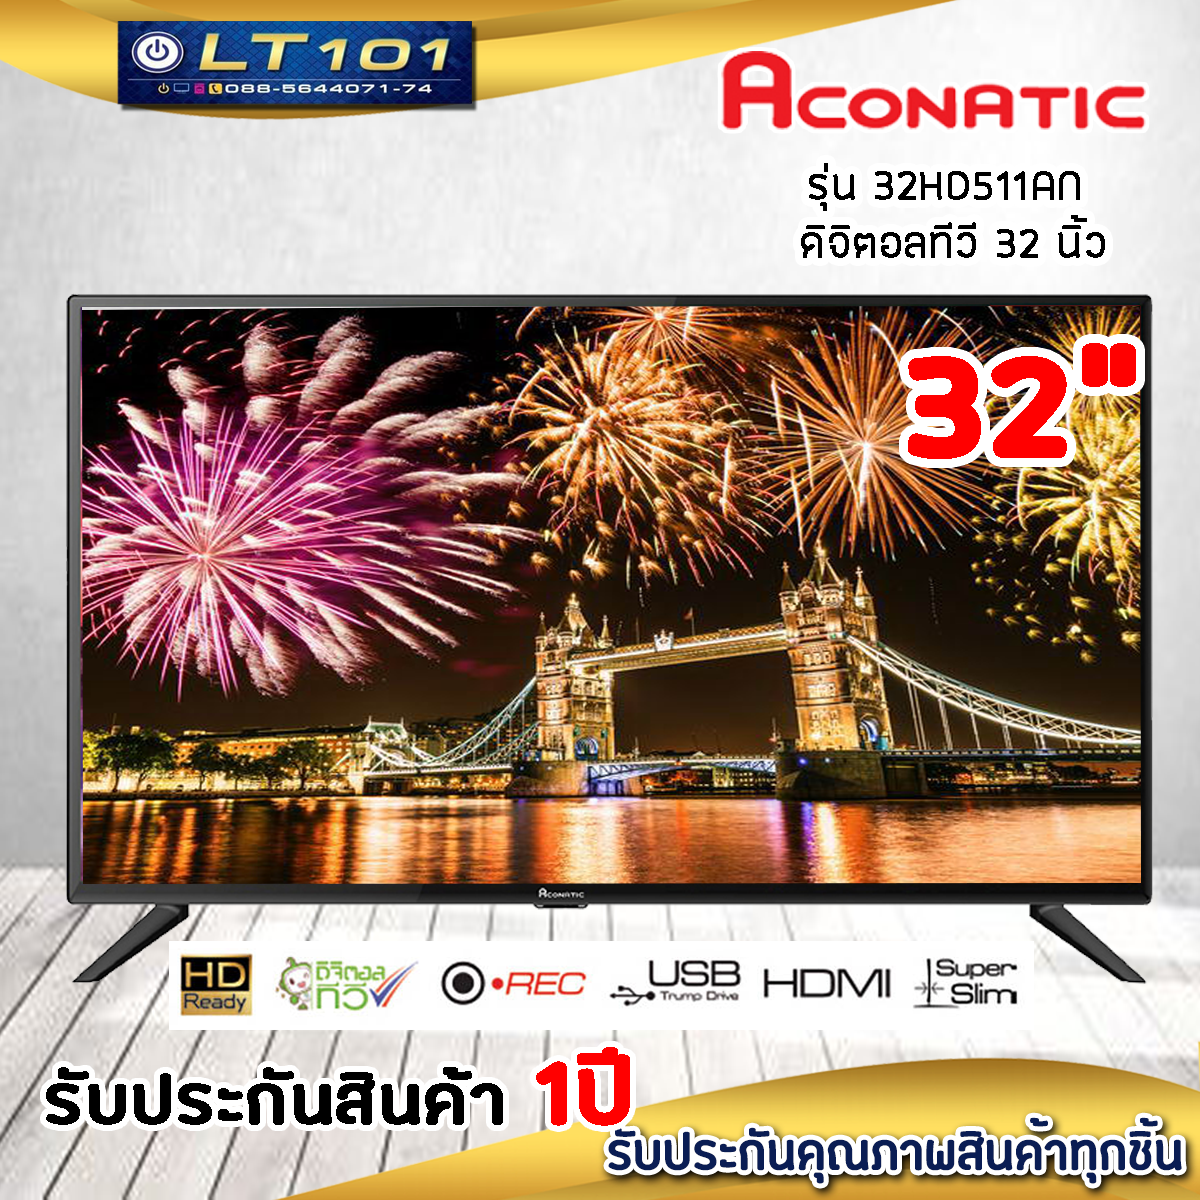 🍅สินค้าพร้อมส่ง🍅 Aconatic ดิจิตอลทีวี Digital TV HD LED (32